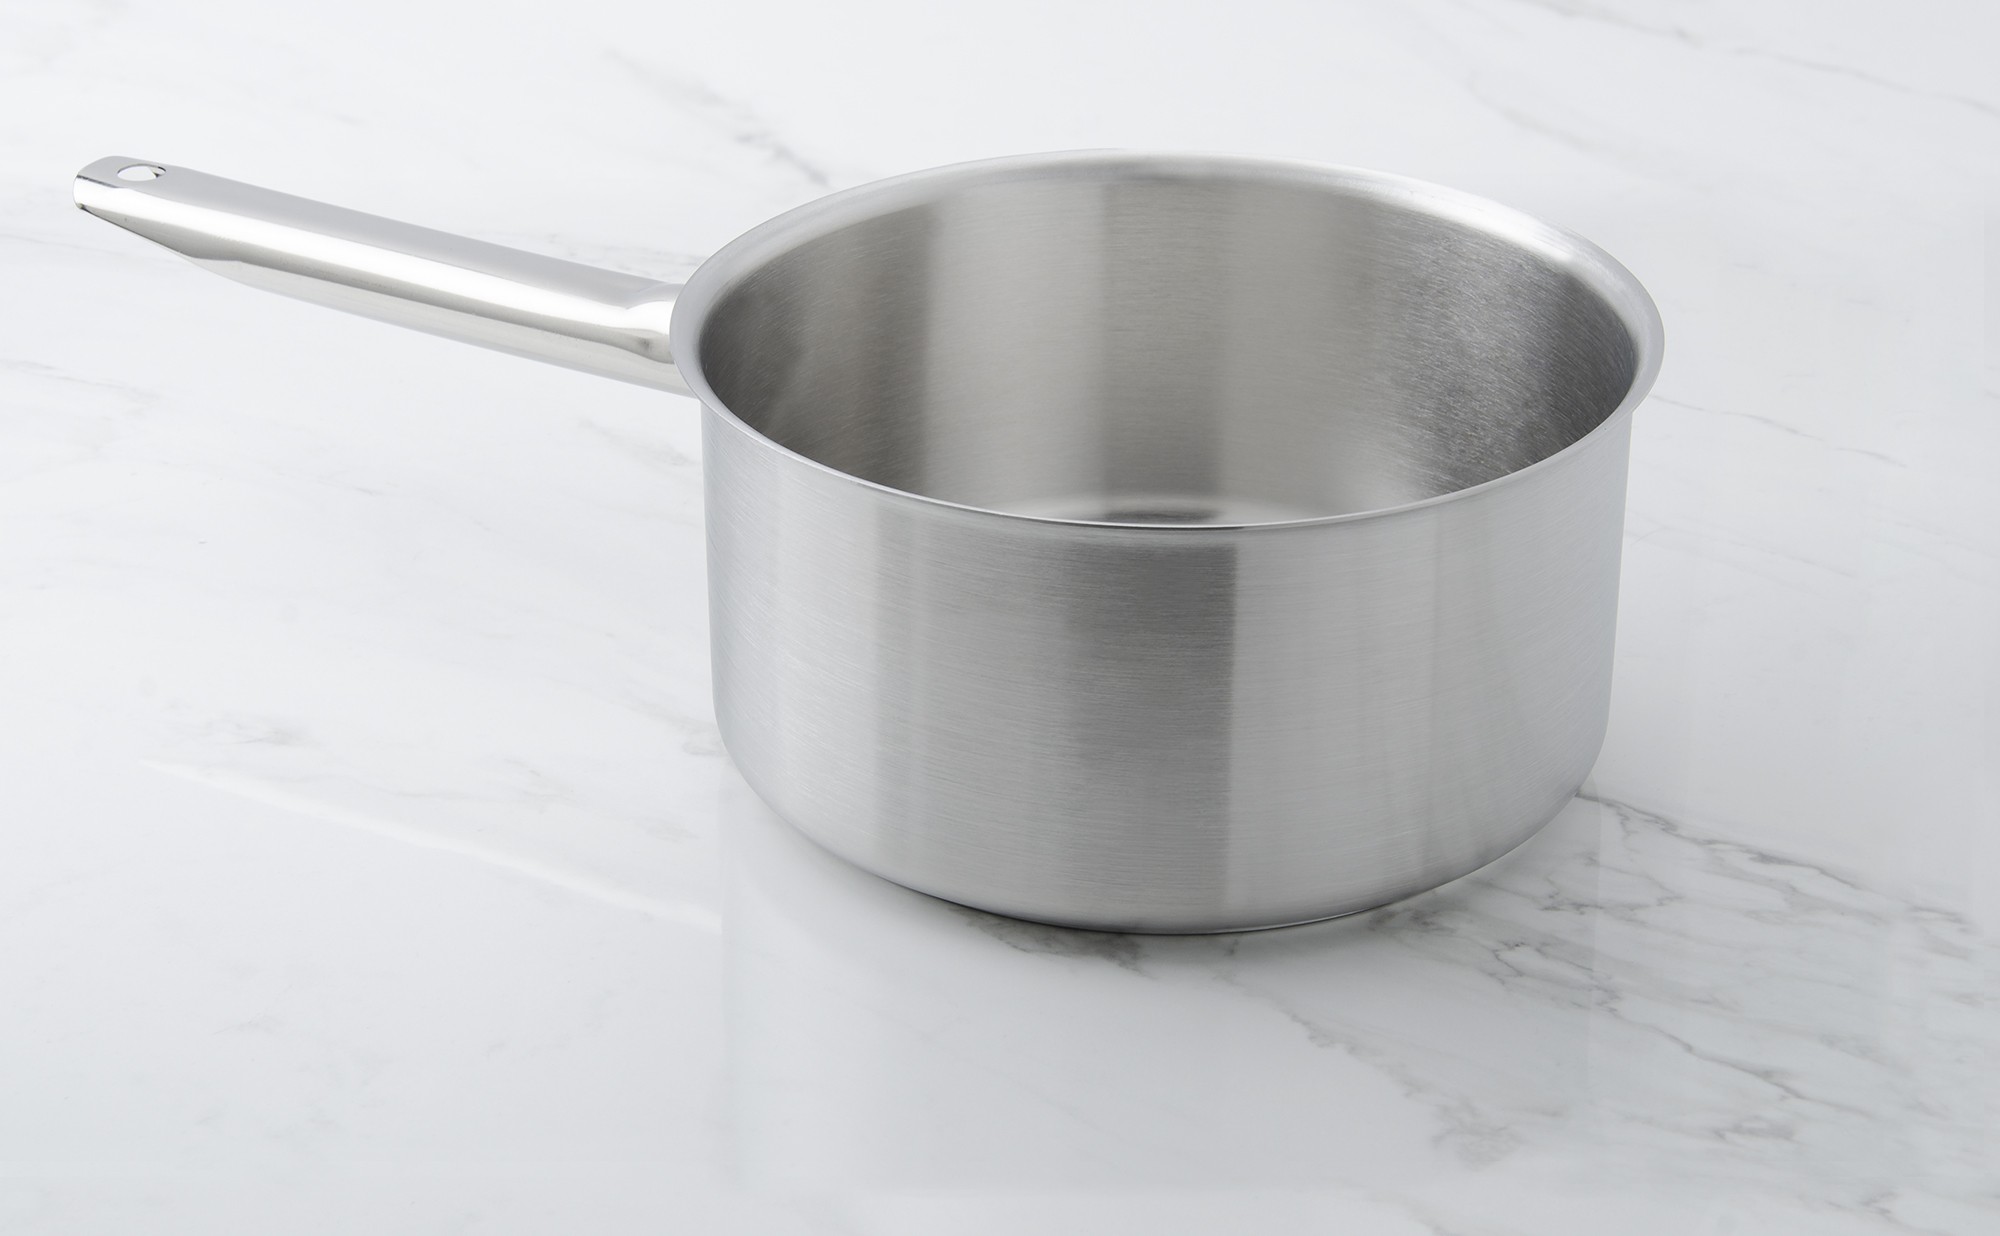 Bourgeat stainless steel casserole diameter 24 cm - Colichef